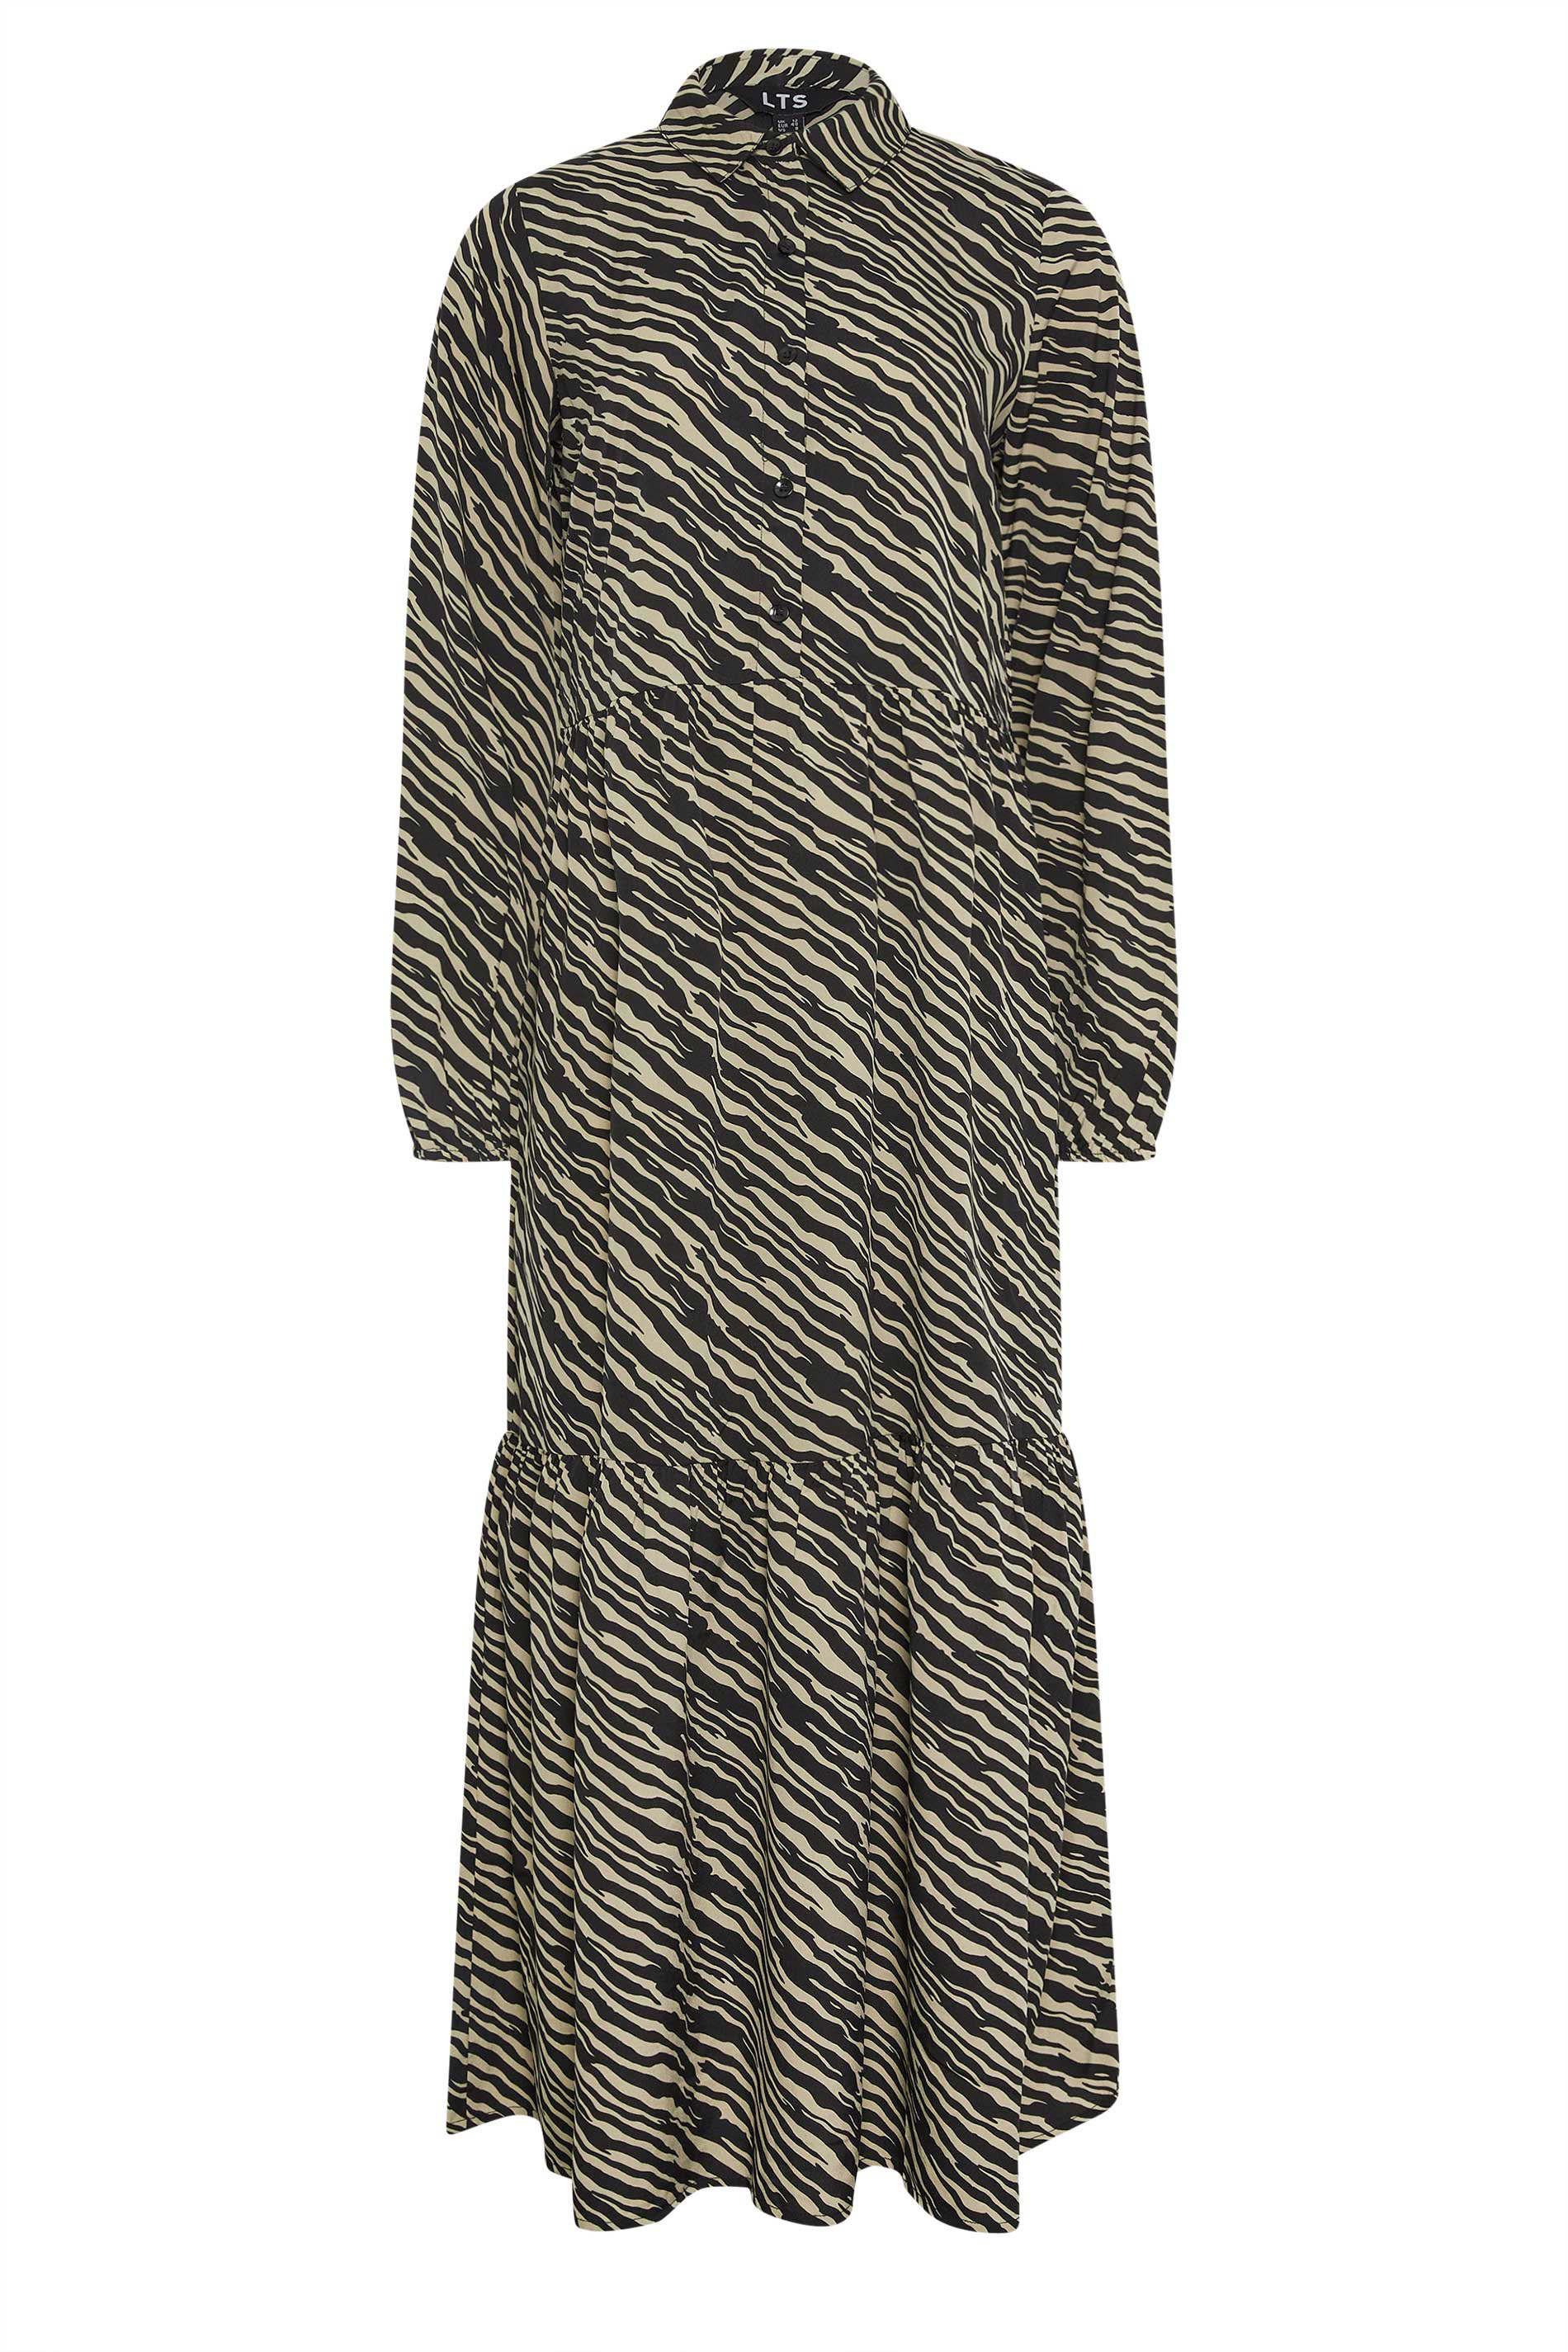 LTS Tall Black Zebra Print Tiered Maxi Dress | Long Tall Sally